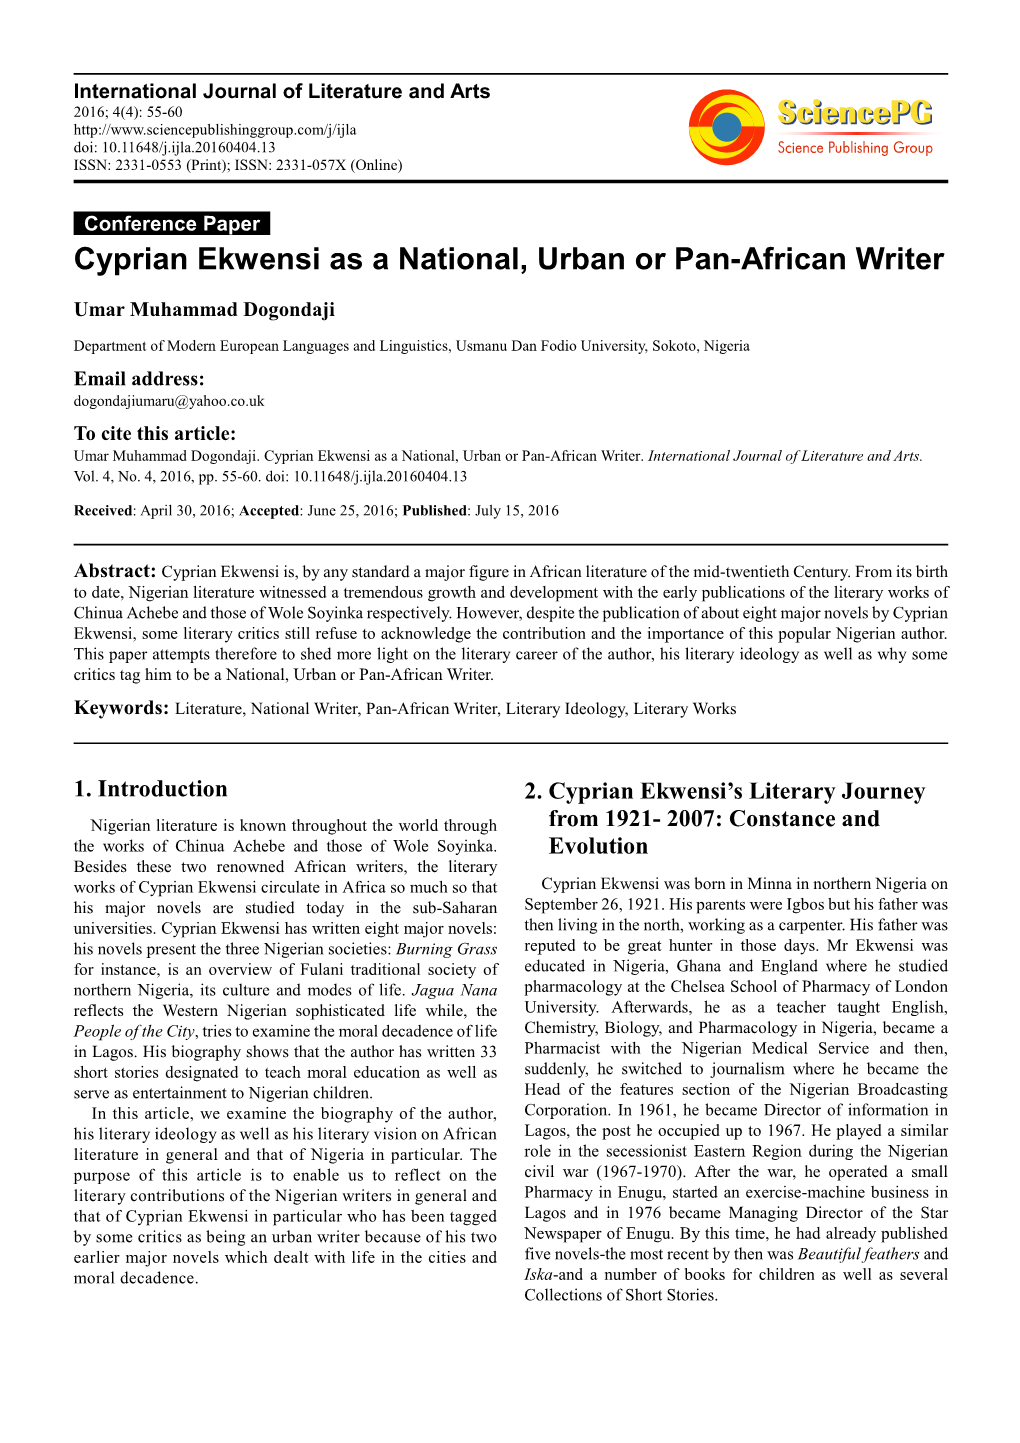 Cyprian Ekwensi As a National, Urban Or Pan-African Writer